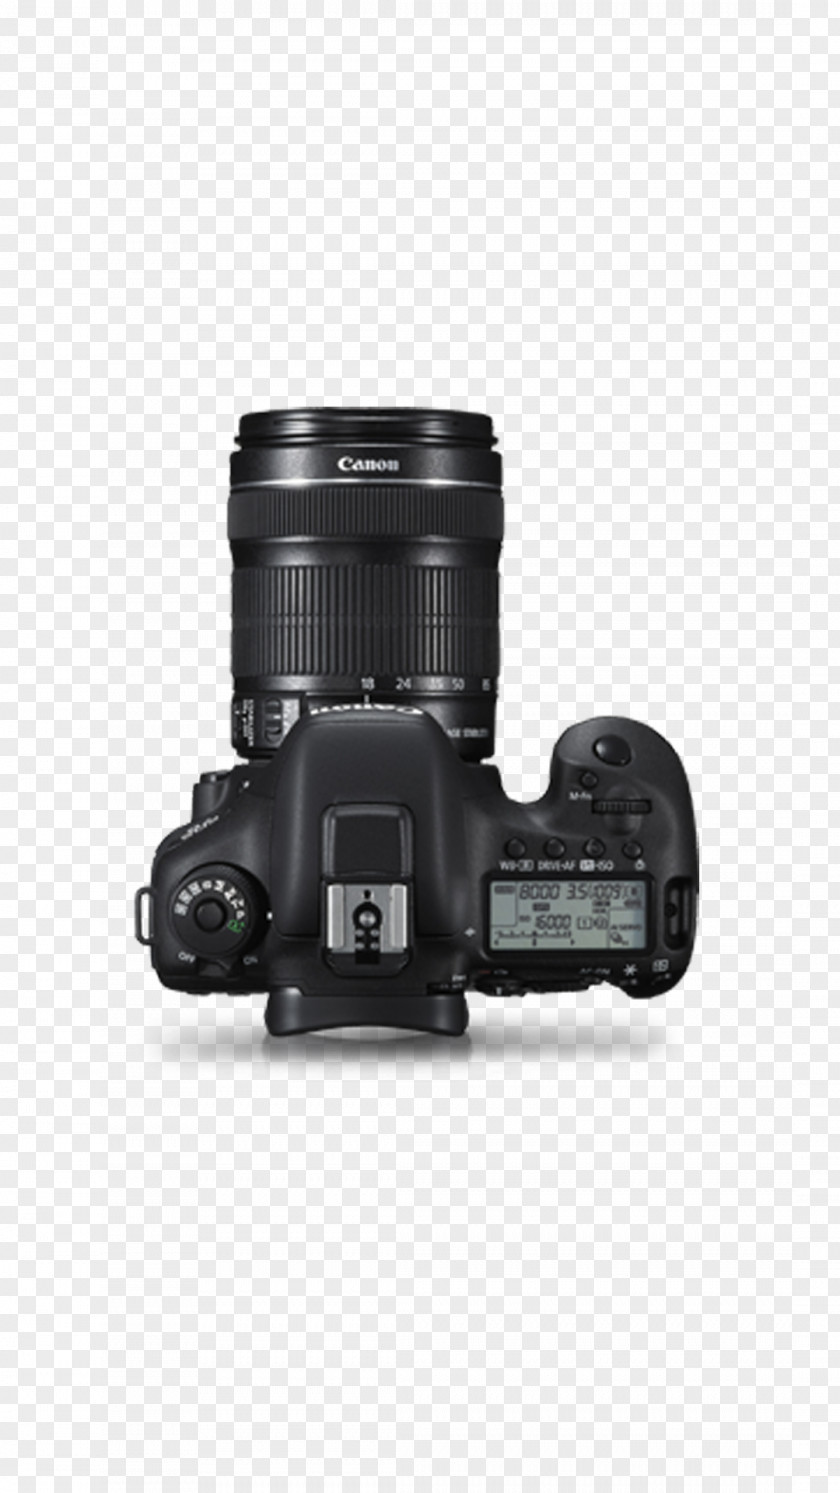 Camera Canon EOS 7D Mark II 6D 5D III EF-S 18–135mm Lens PNG